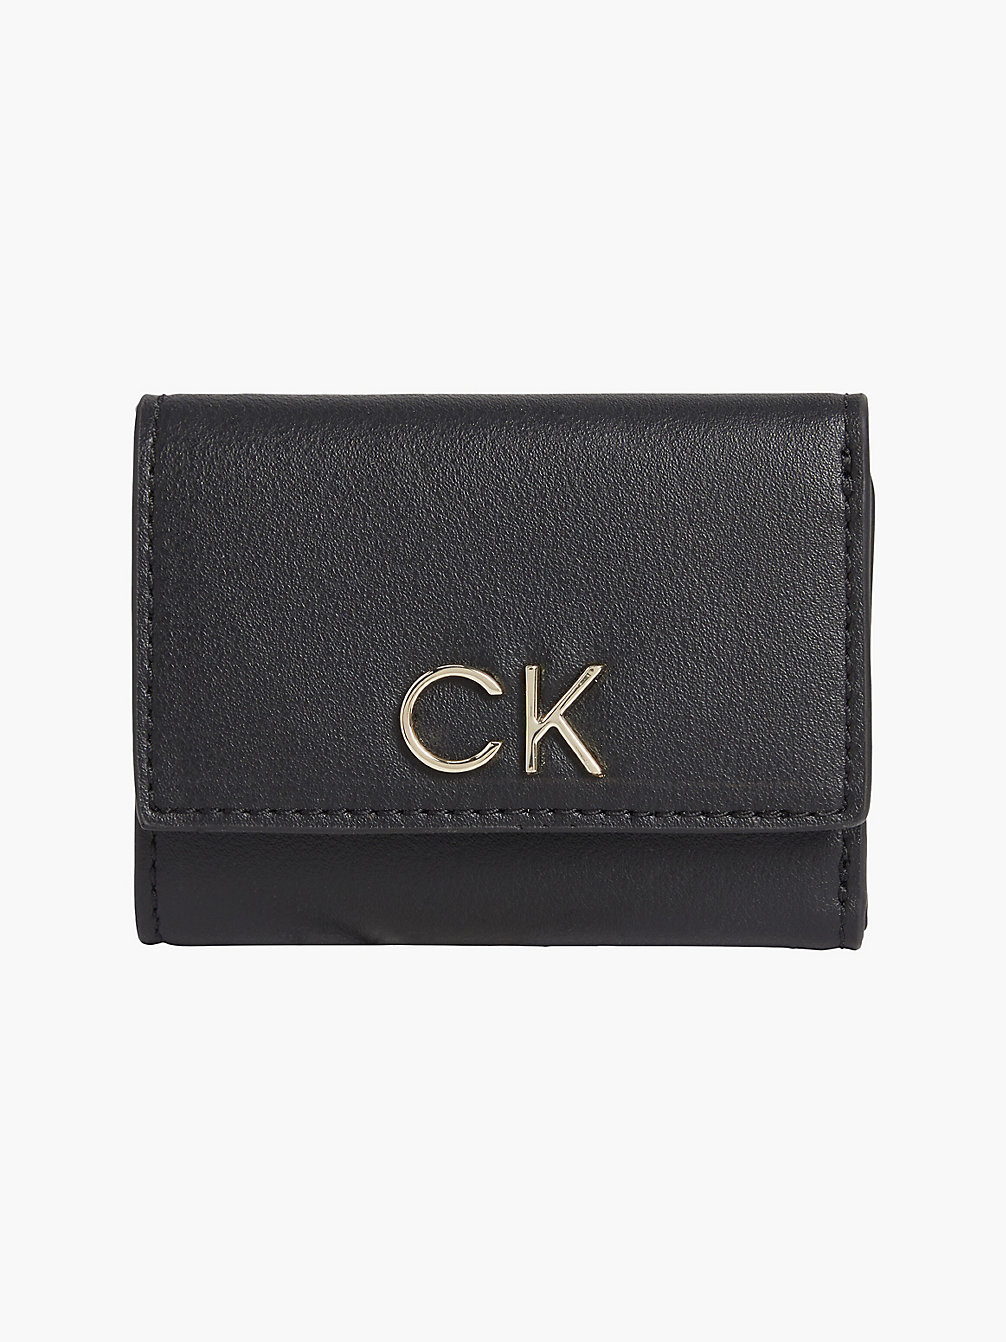 CK BLACK > Dreifach Faltbares Mini-Portemonnaie > undefined Damen - Calvin Klein